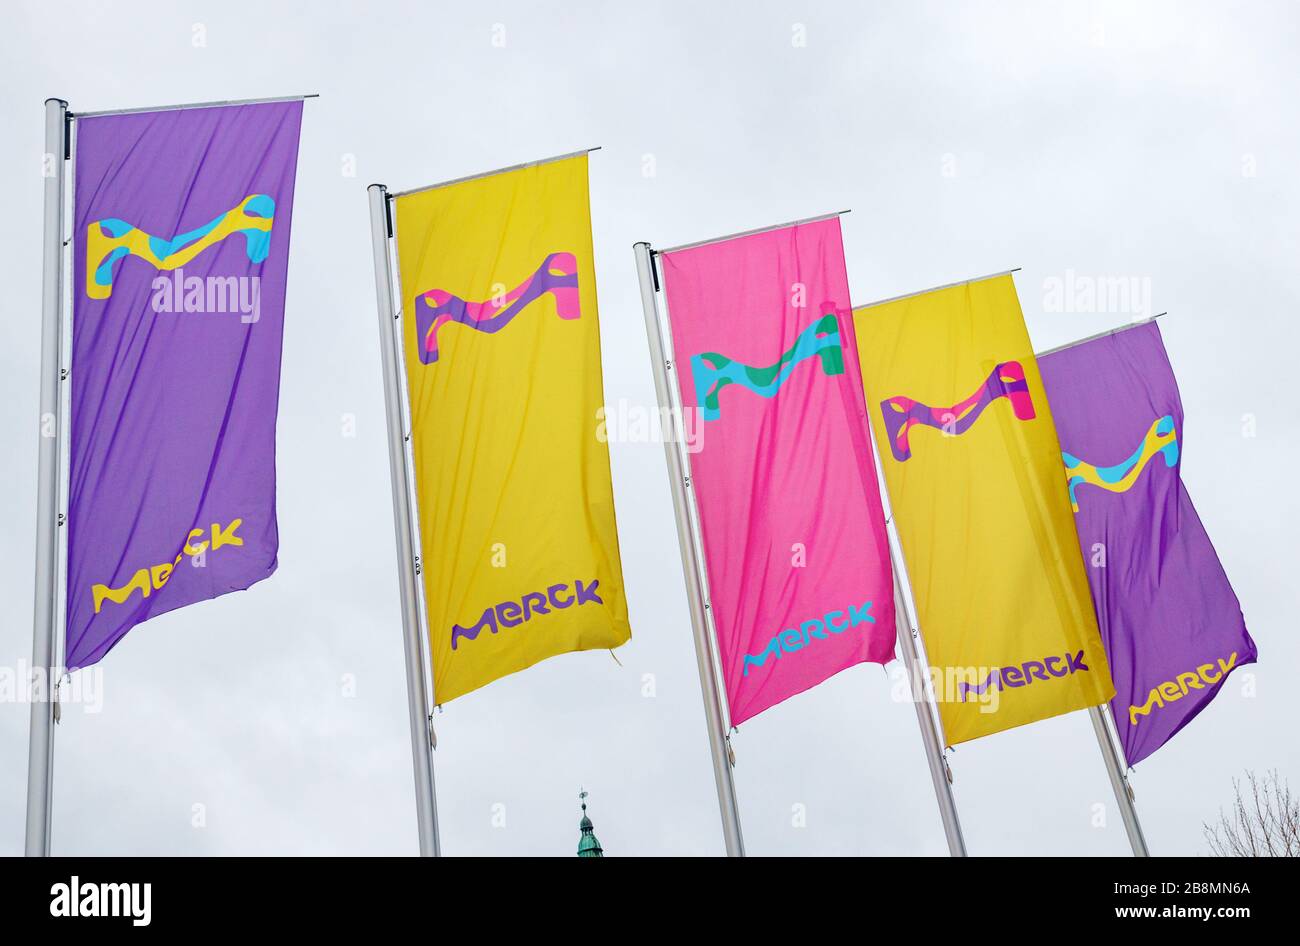 Gamme de drapeaux colorés avec le logo Merck. Merck KGaA est l'une des plus grandes entreprises pharmaceutiques au monde. Darmstadt, Allemagne. Banque D'Images